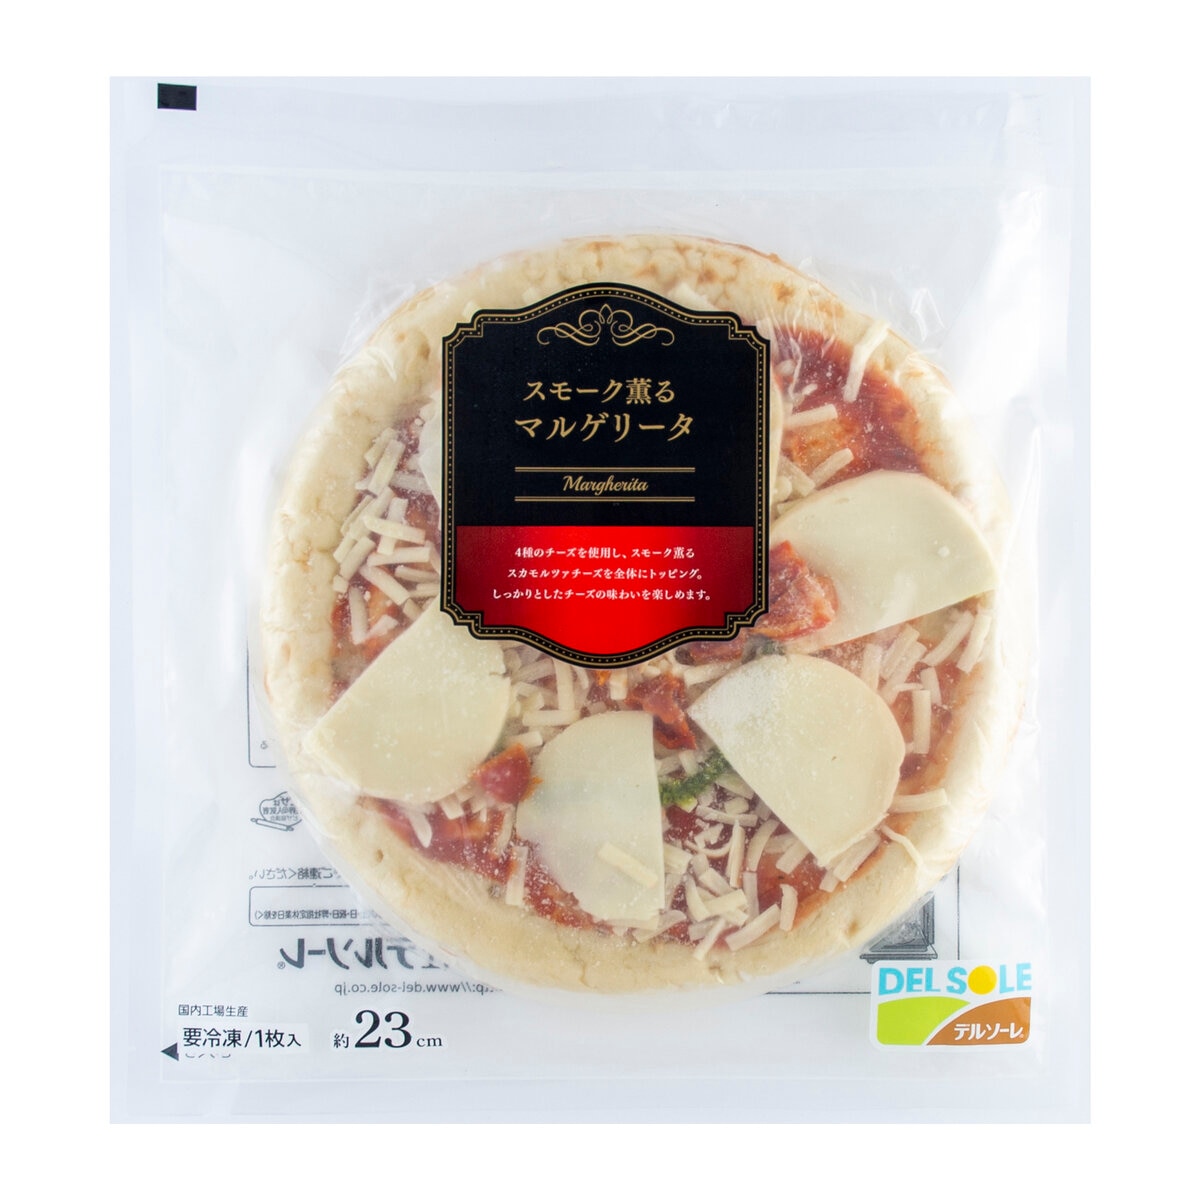 Costco　プレミアムピザ10枚セット　冷凍】デルソーレ　Japan